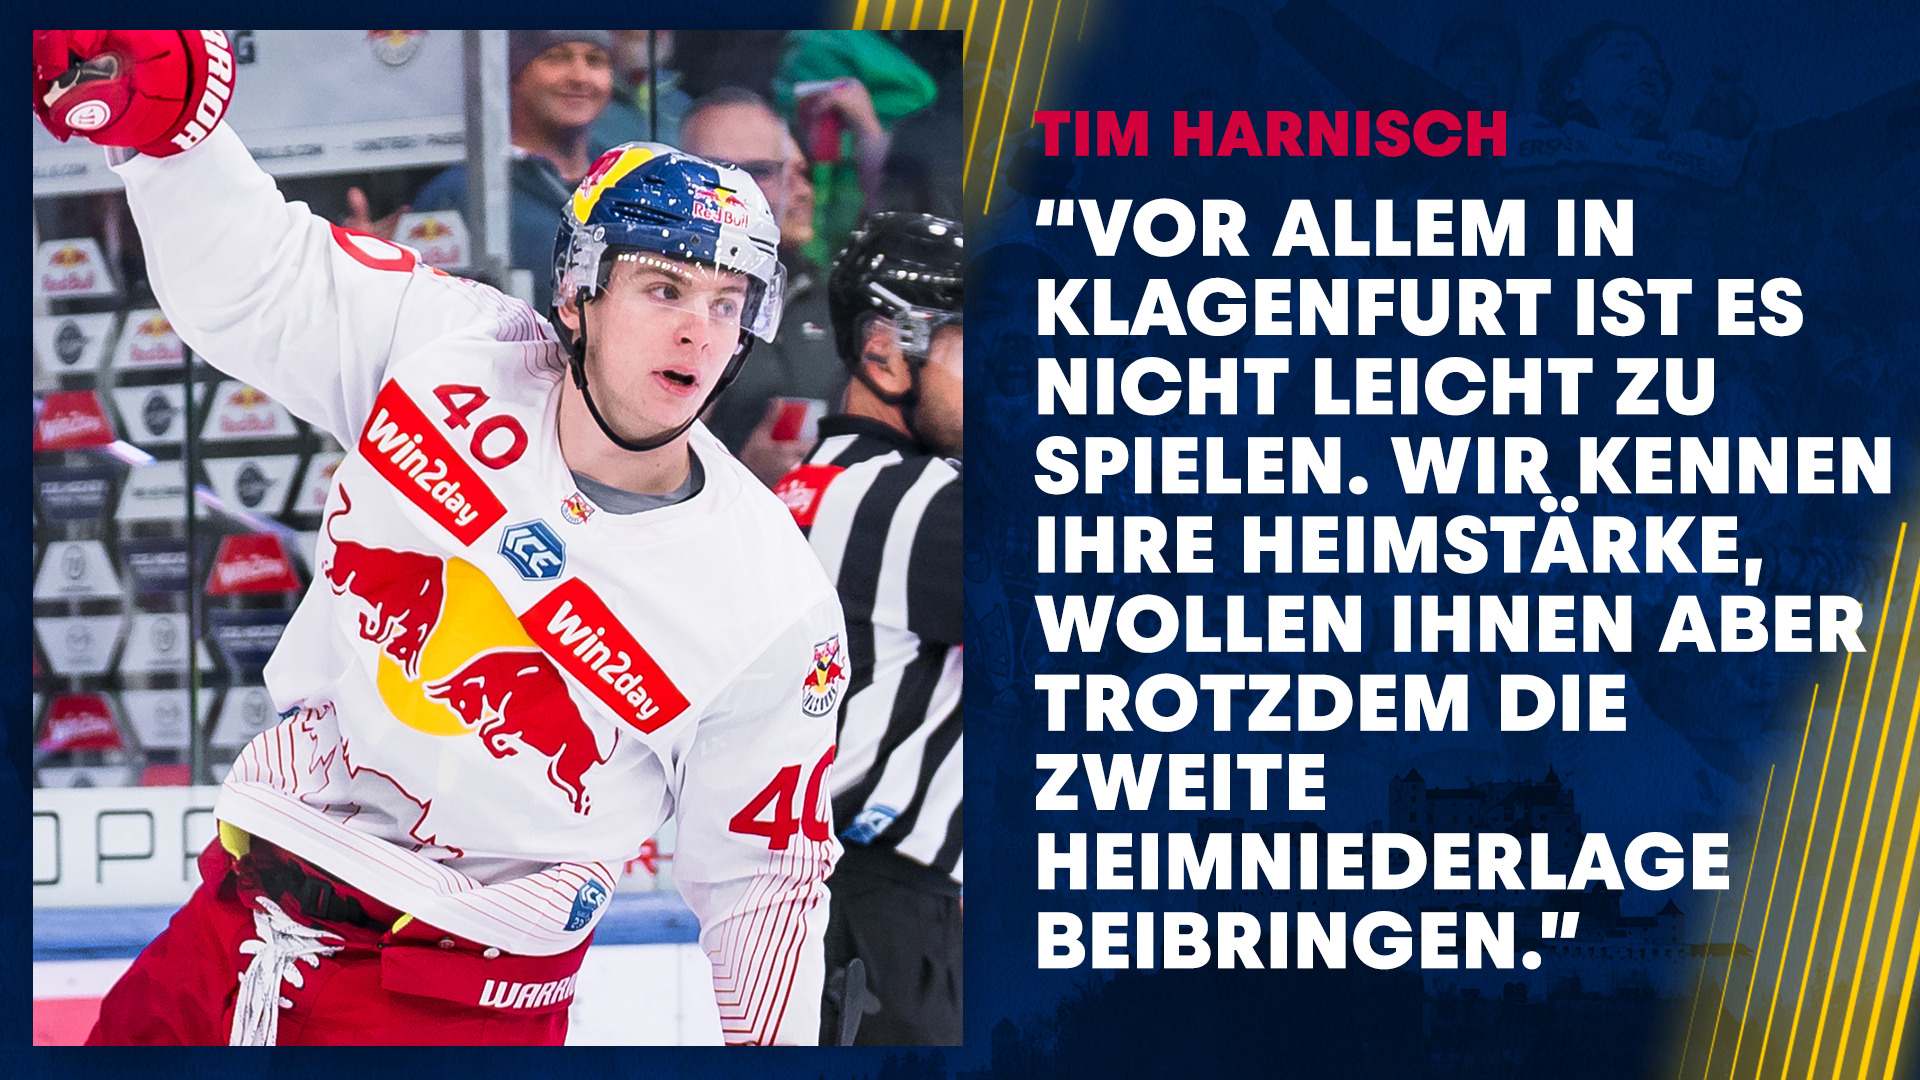 Statement: Tim Harnisch